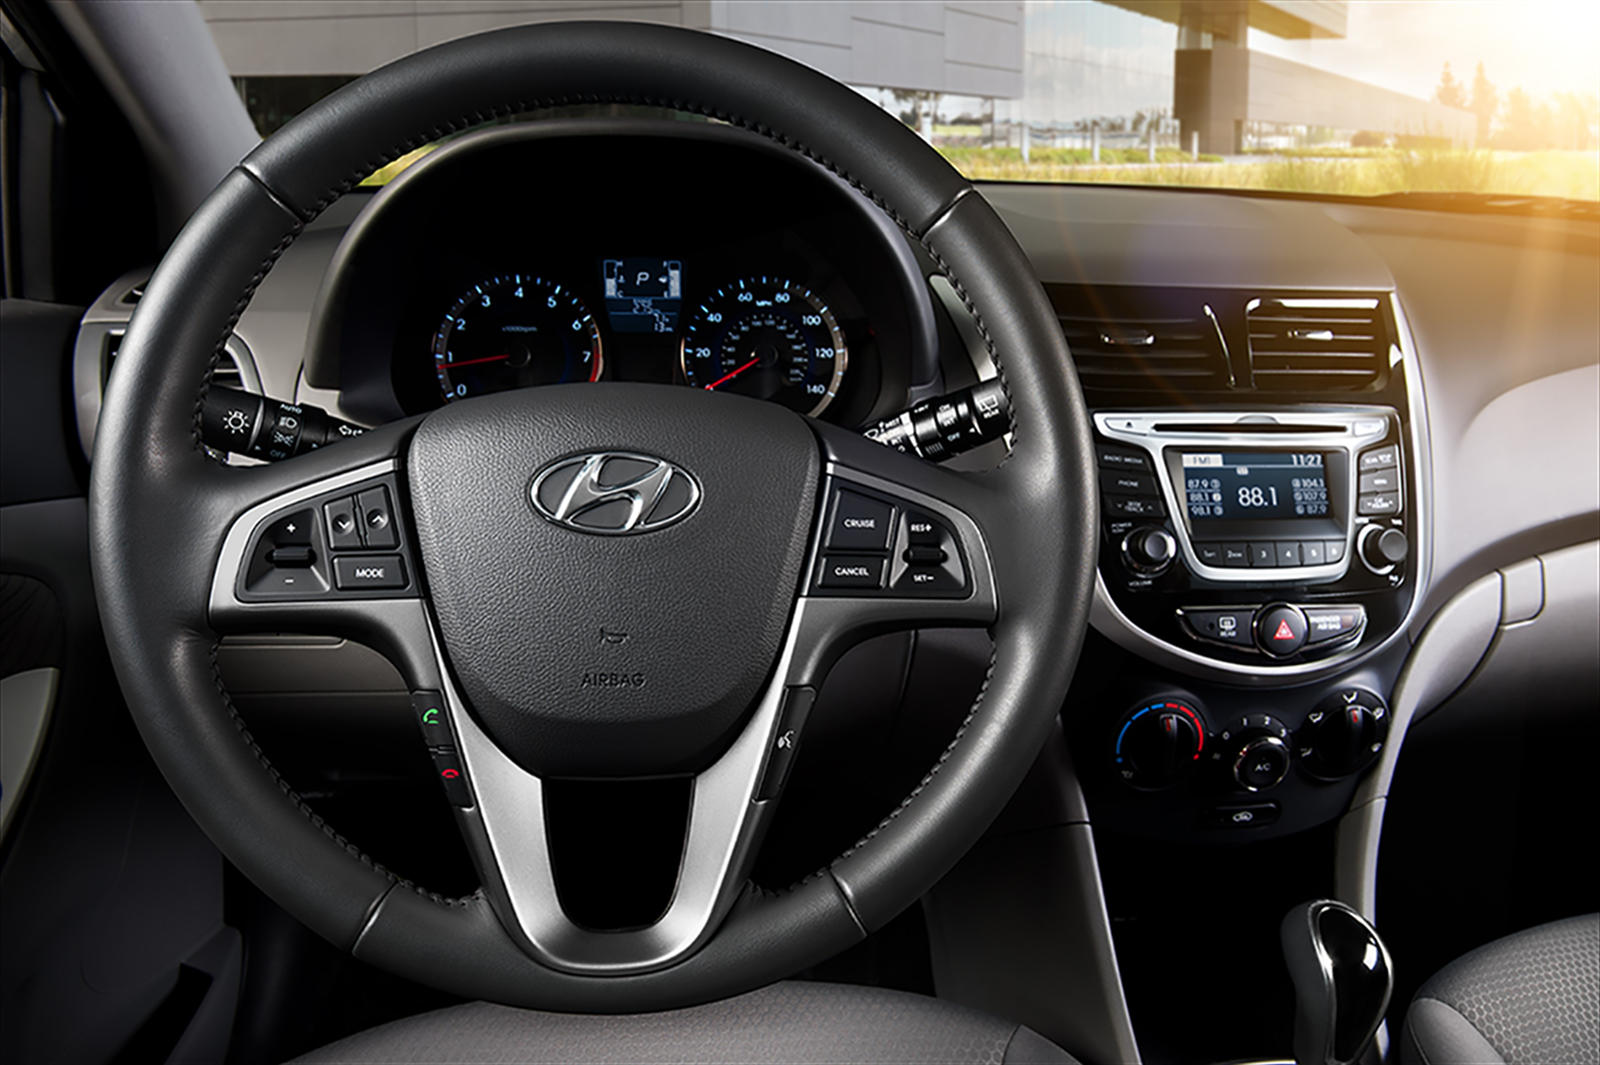 2016 Hyundai Accent Interior Photos | CarBuzz